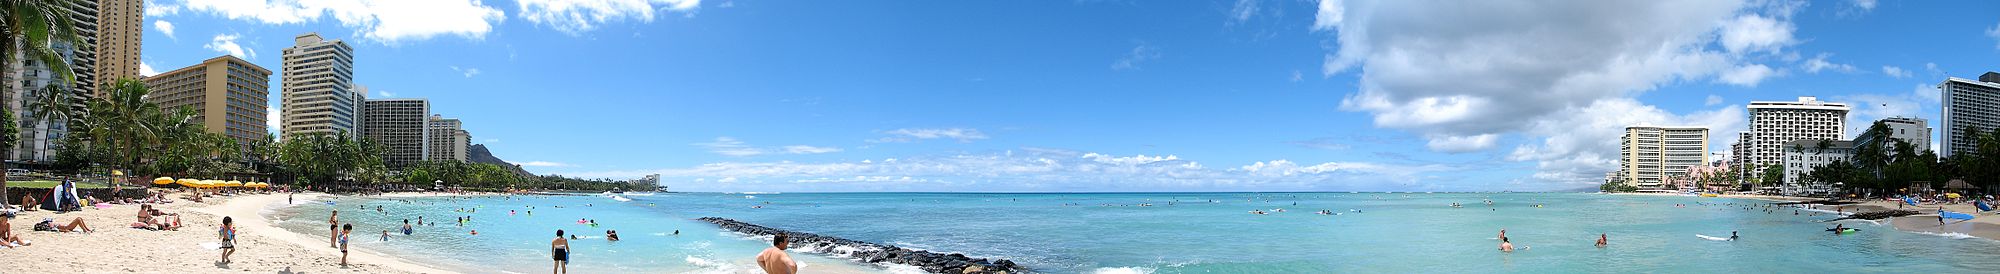 Panoramatická fotografia Waikiki Beach